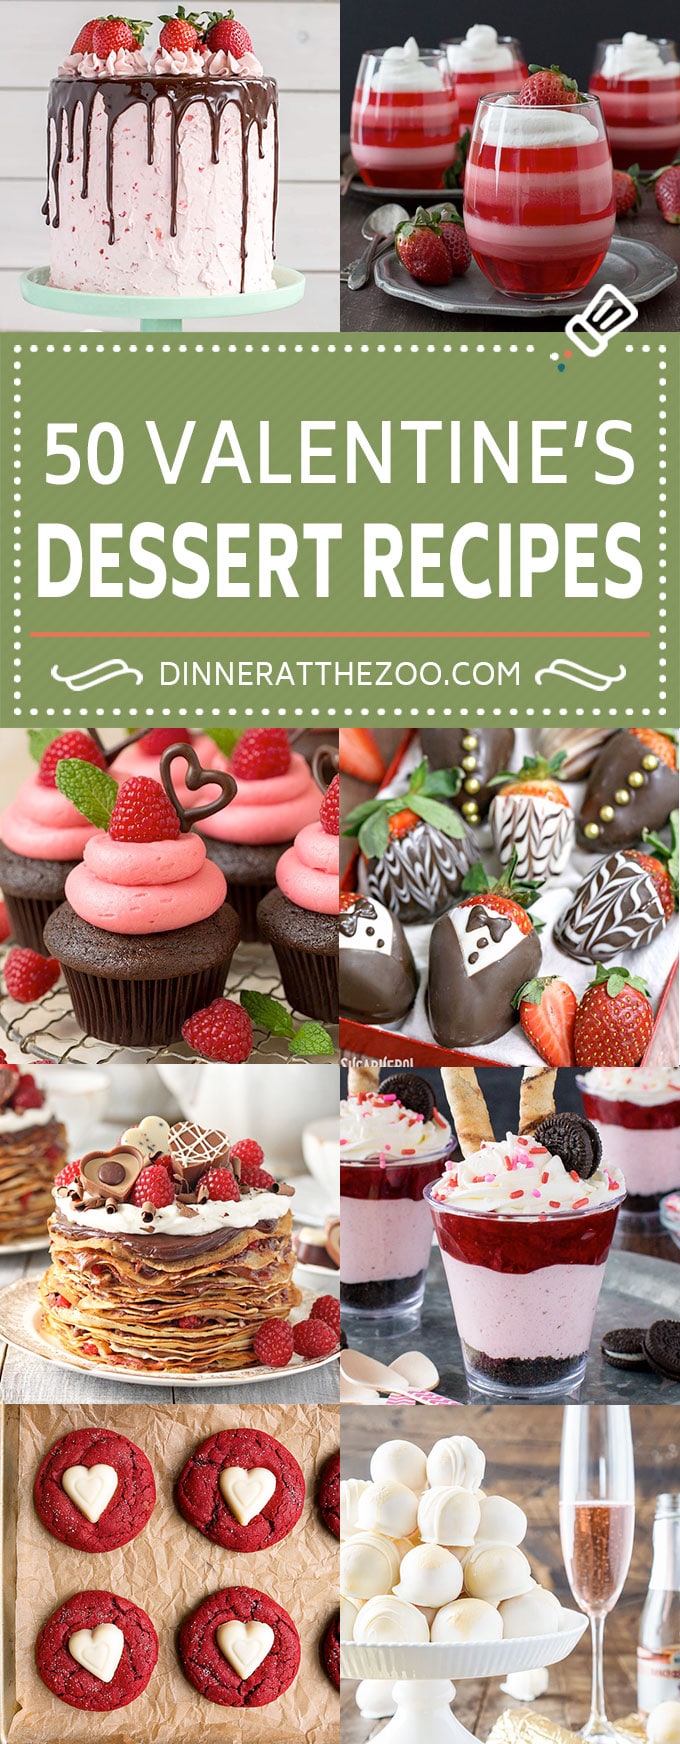 50 dulces recetas para el día de San Valentín |  Dulces de chocolate |  Dulces de San Valentín # día de san valentín #postre # pasteles # dulces #dinneratthezoo